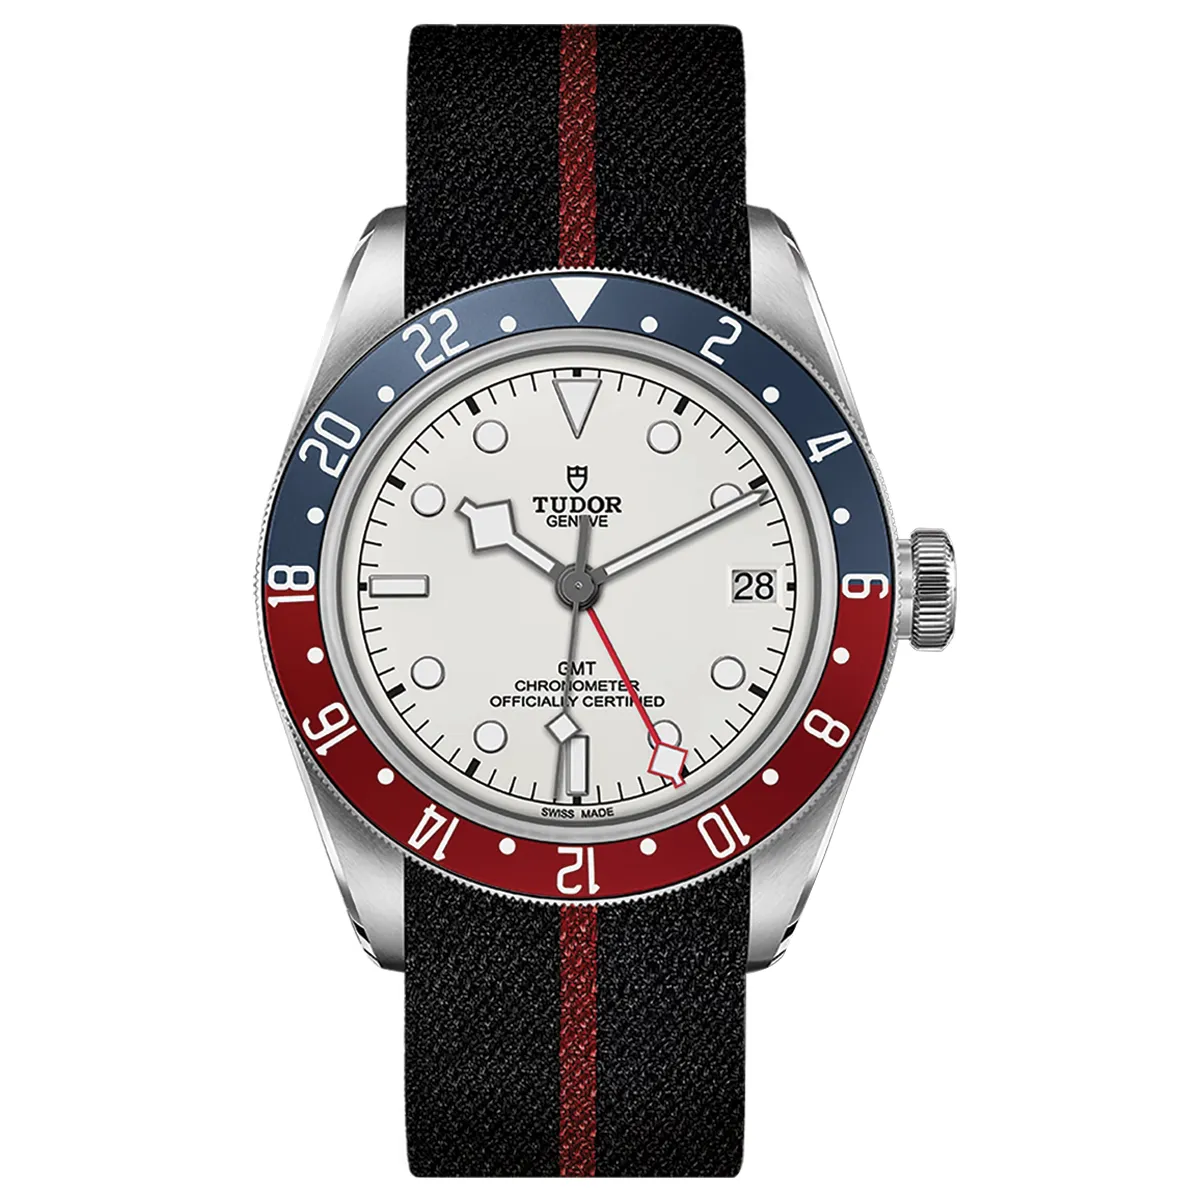 Đồng hồ Tudor Black Bay GMT M79830RB-0012 mặt số màu trắng. Dây đeo bằng nato. Thân vỏ bằng thép.